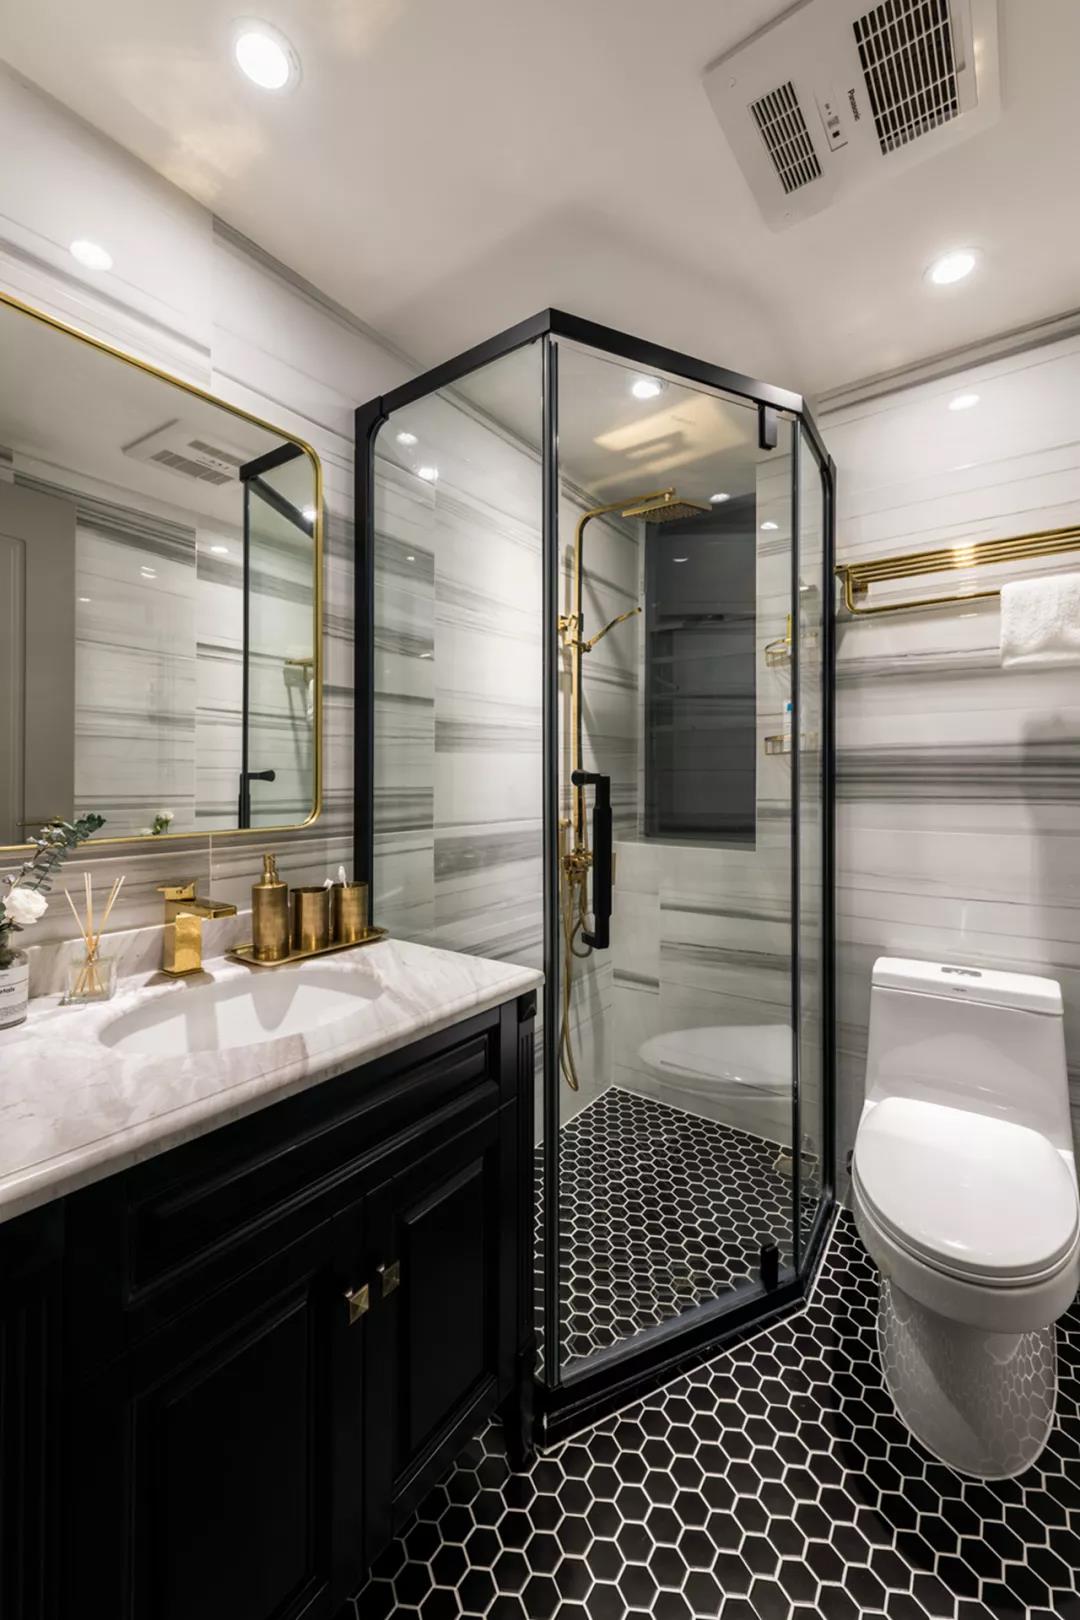 卫浴间大理石张力十足，干湿分离设计让空间显得格外清新、舒适。